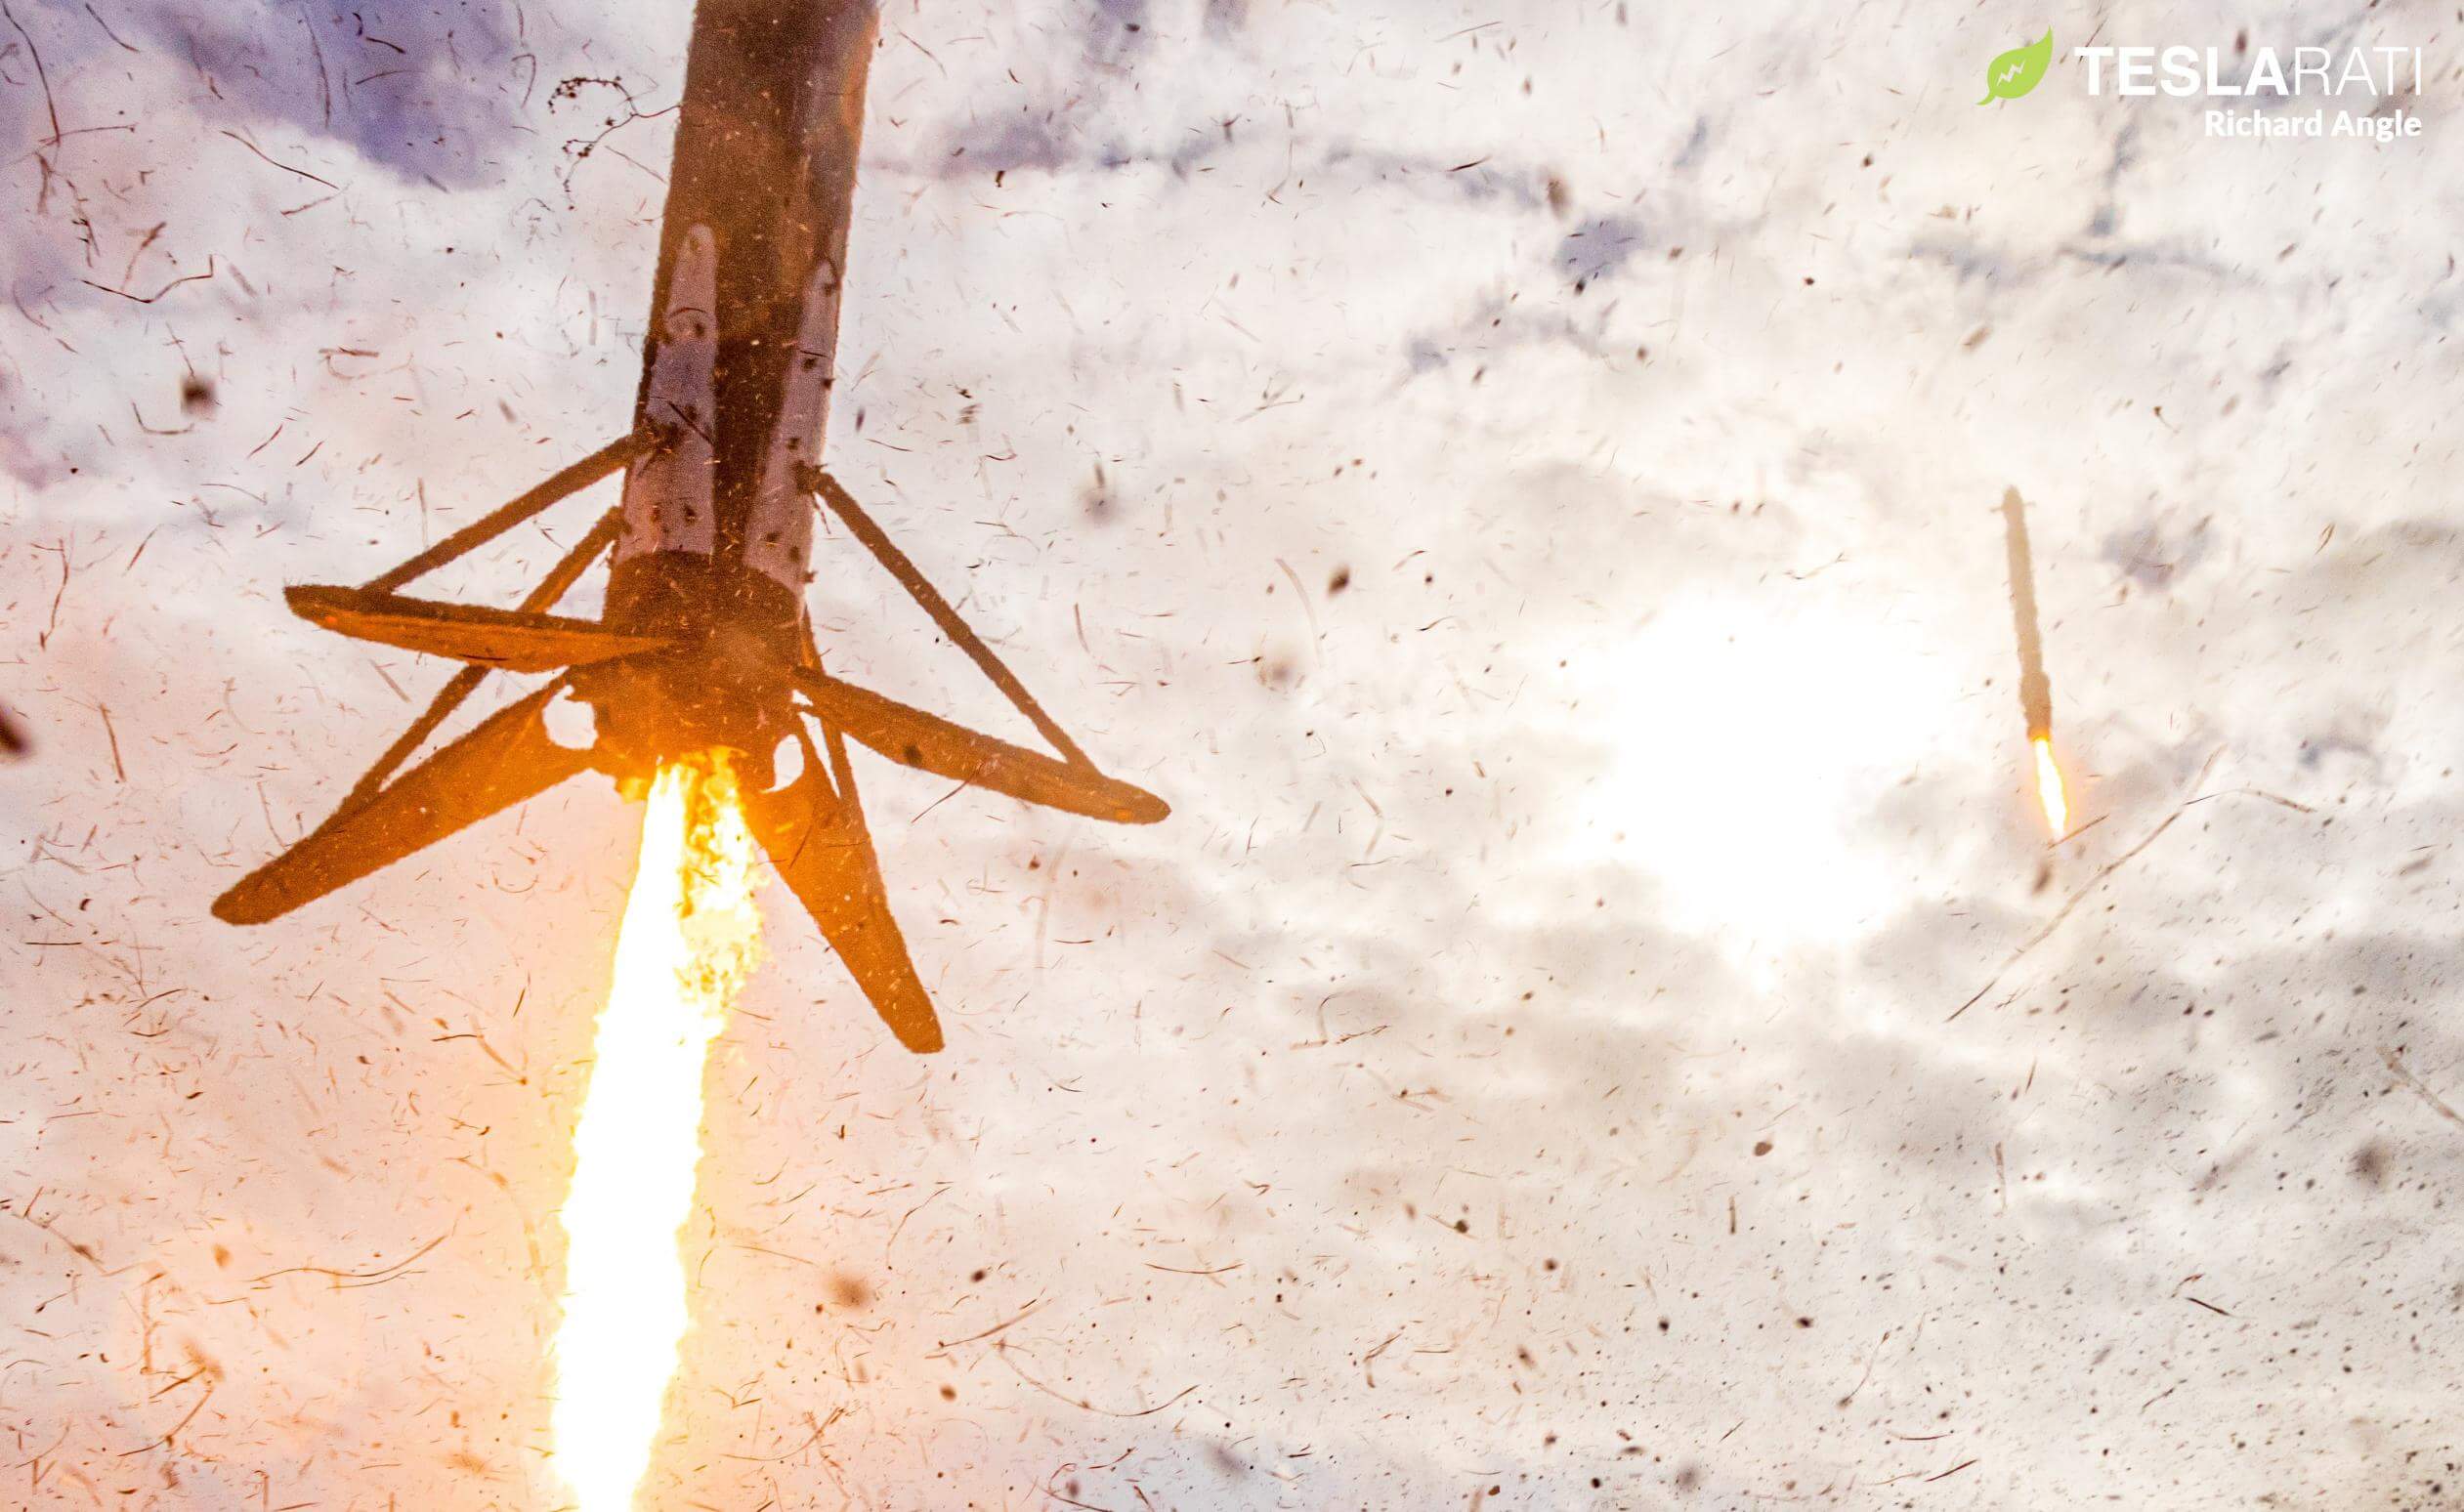 SpaceX’in Falcon Heavy roketi üç yıllık bir aradan sonra tekrar faaliyete geçti